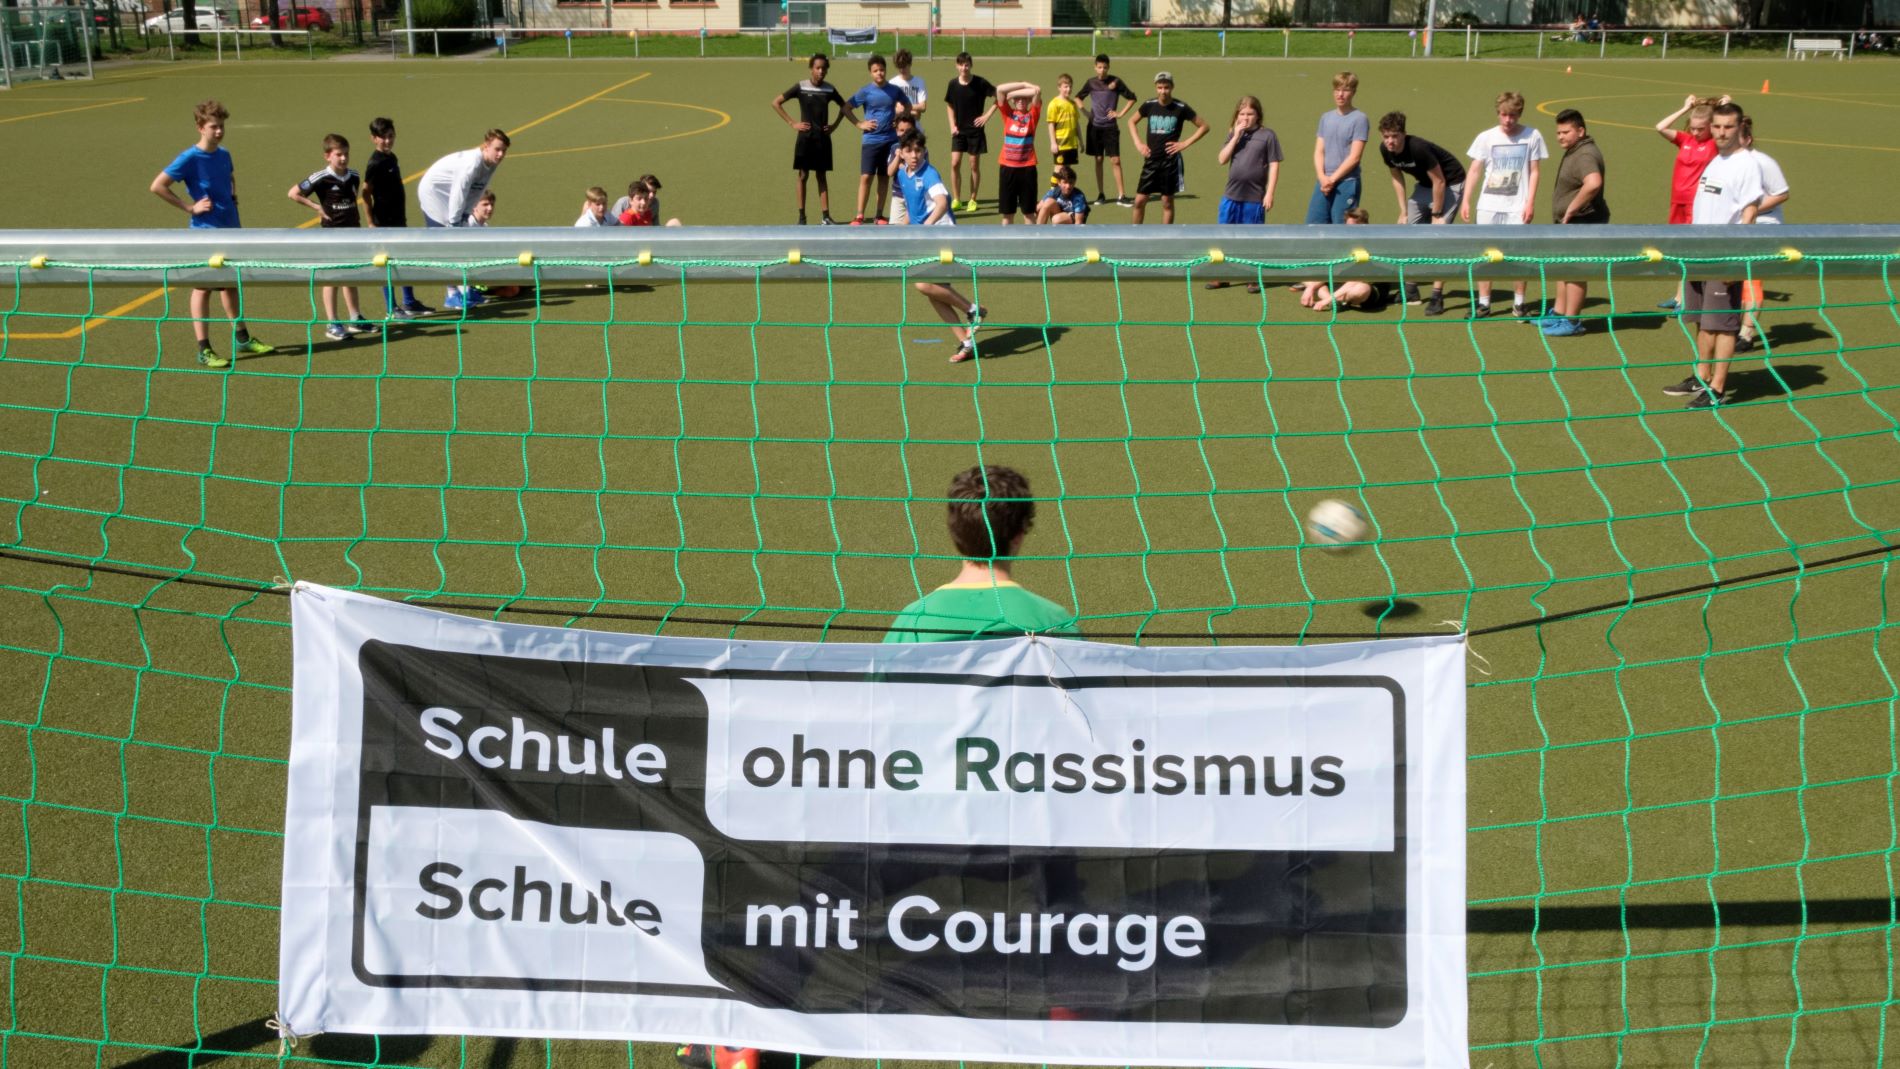 Eine Gruppe von Schüler*innen spielt Fußball. Am Tor ist ein SOR-SMC Plakat aufgehängt.